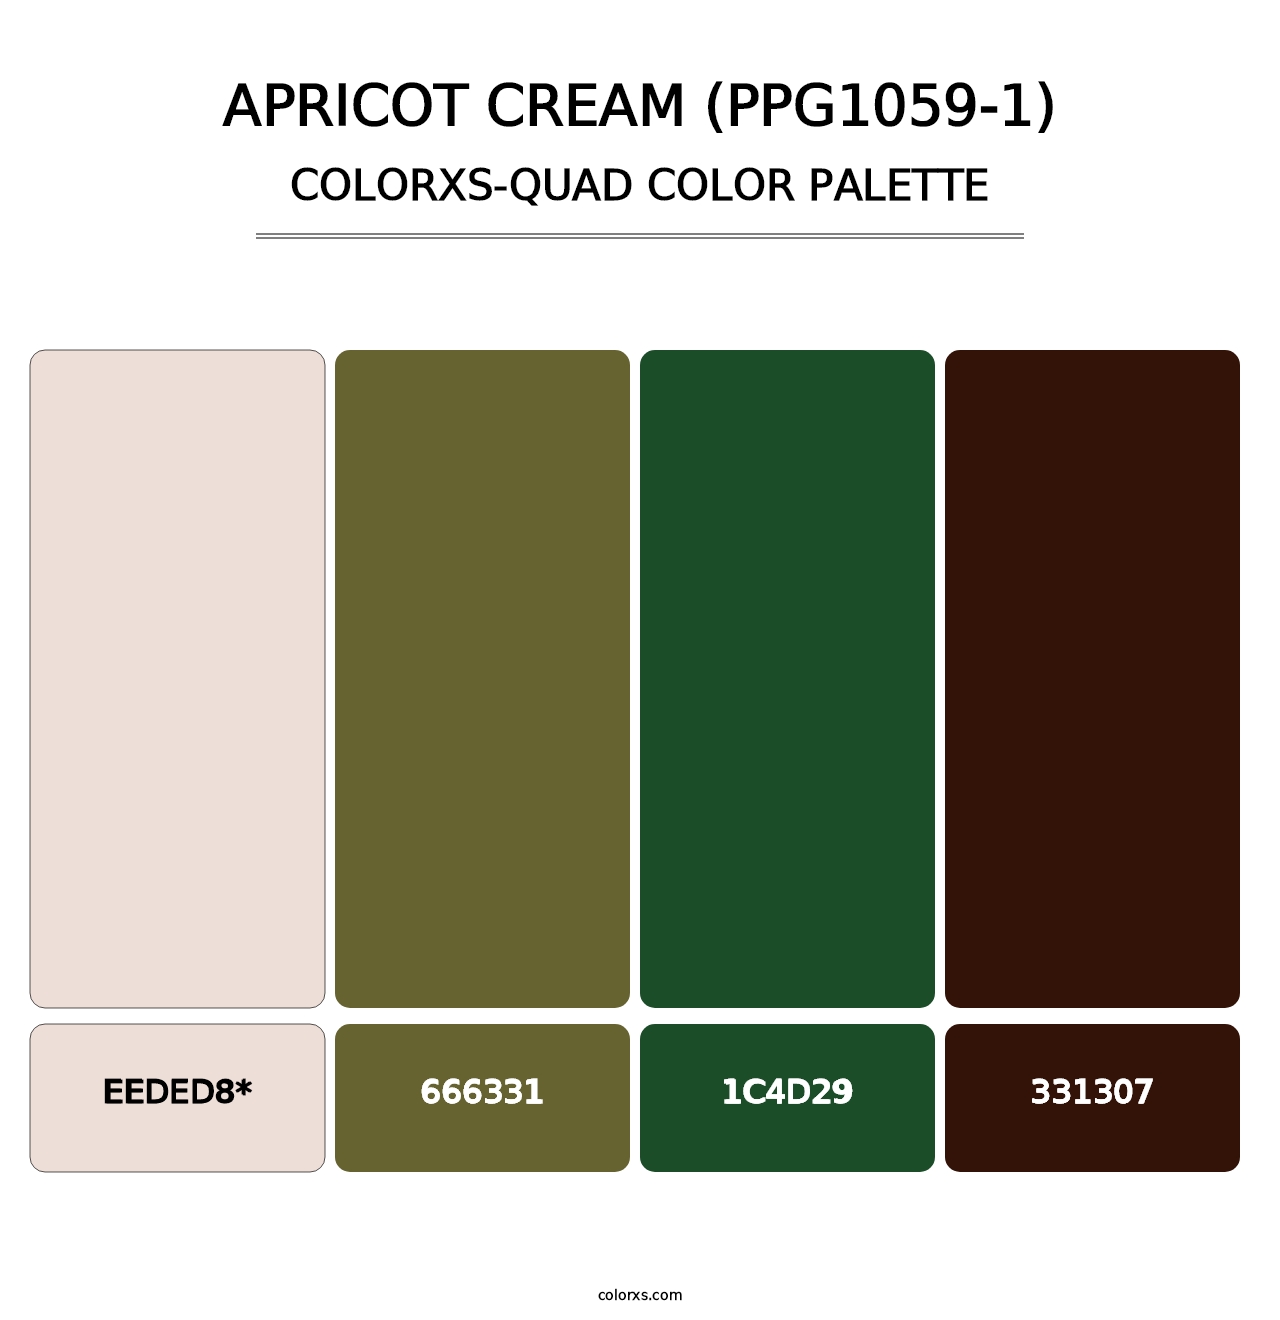 Apricot Cream (PPG1059-1) - Colorxs Quad Palette